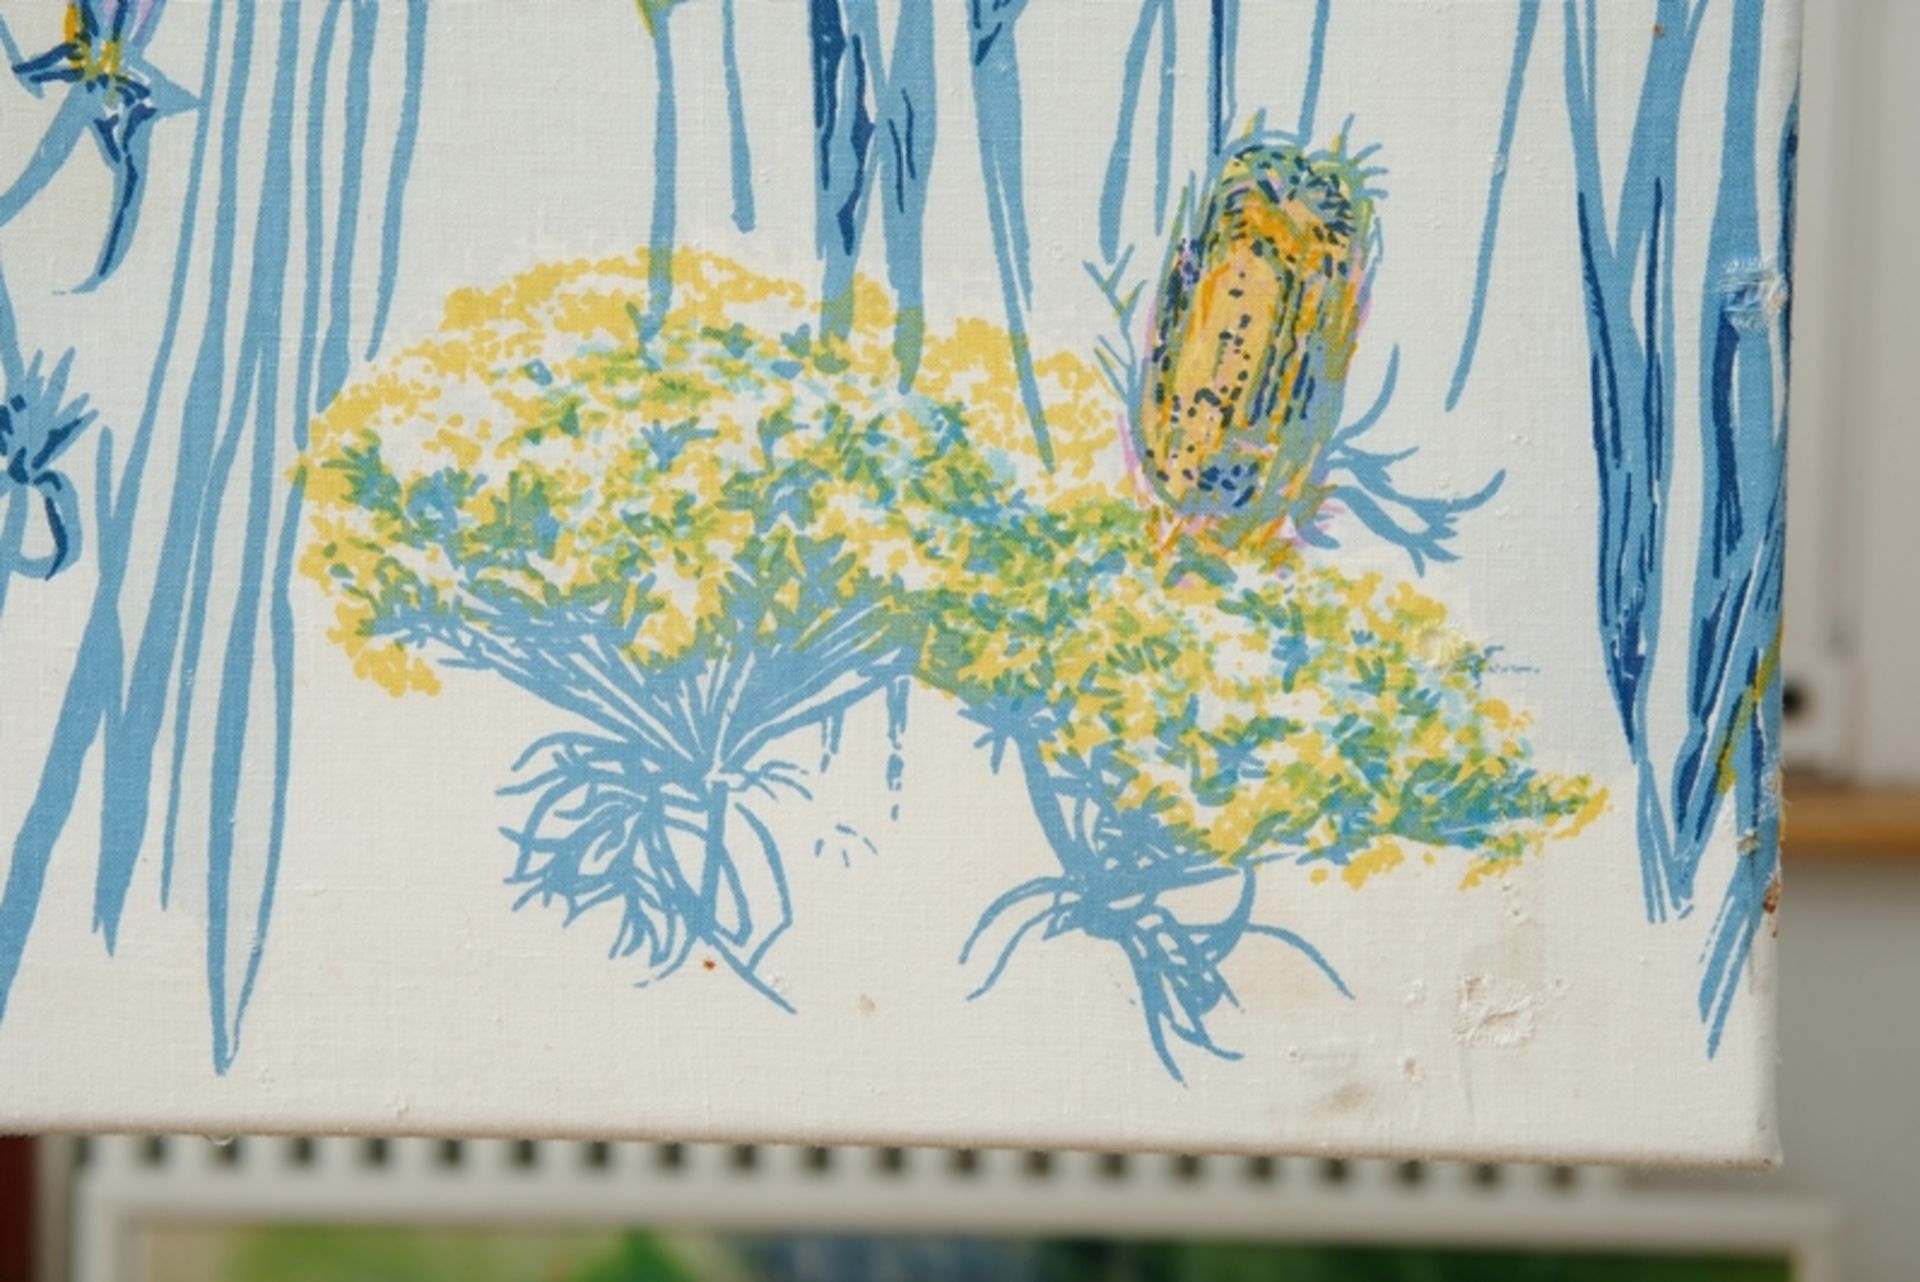 Grieshaber, HAP (1909-1981) "Vogelfrei II über Blumenwiese", 1974, Colour silkscreen on canvas. God - Image 3 of 4